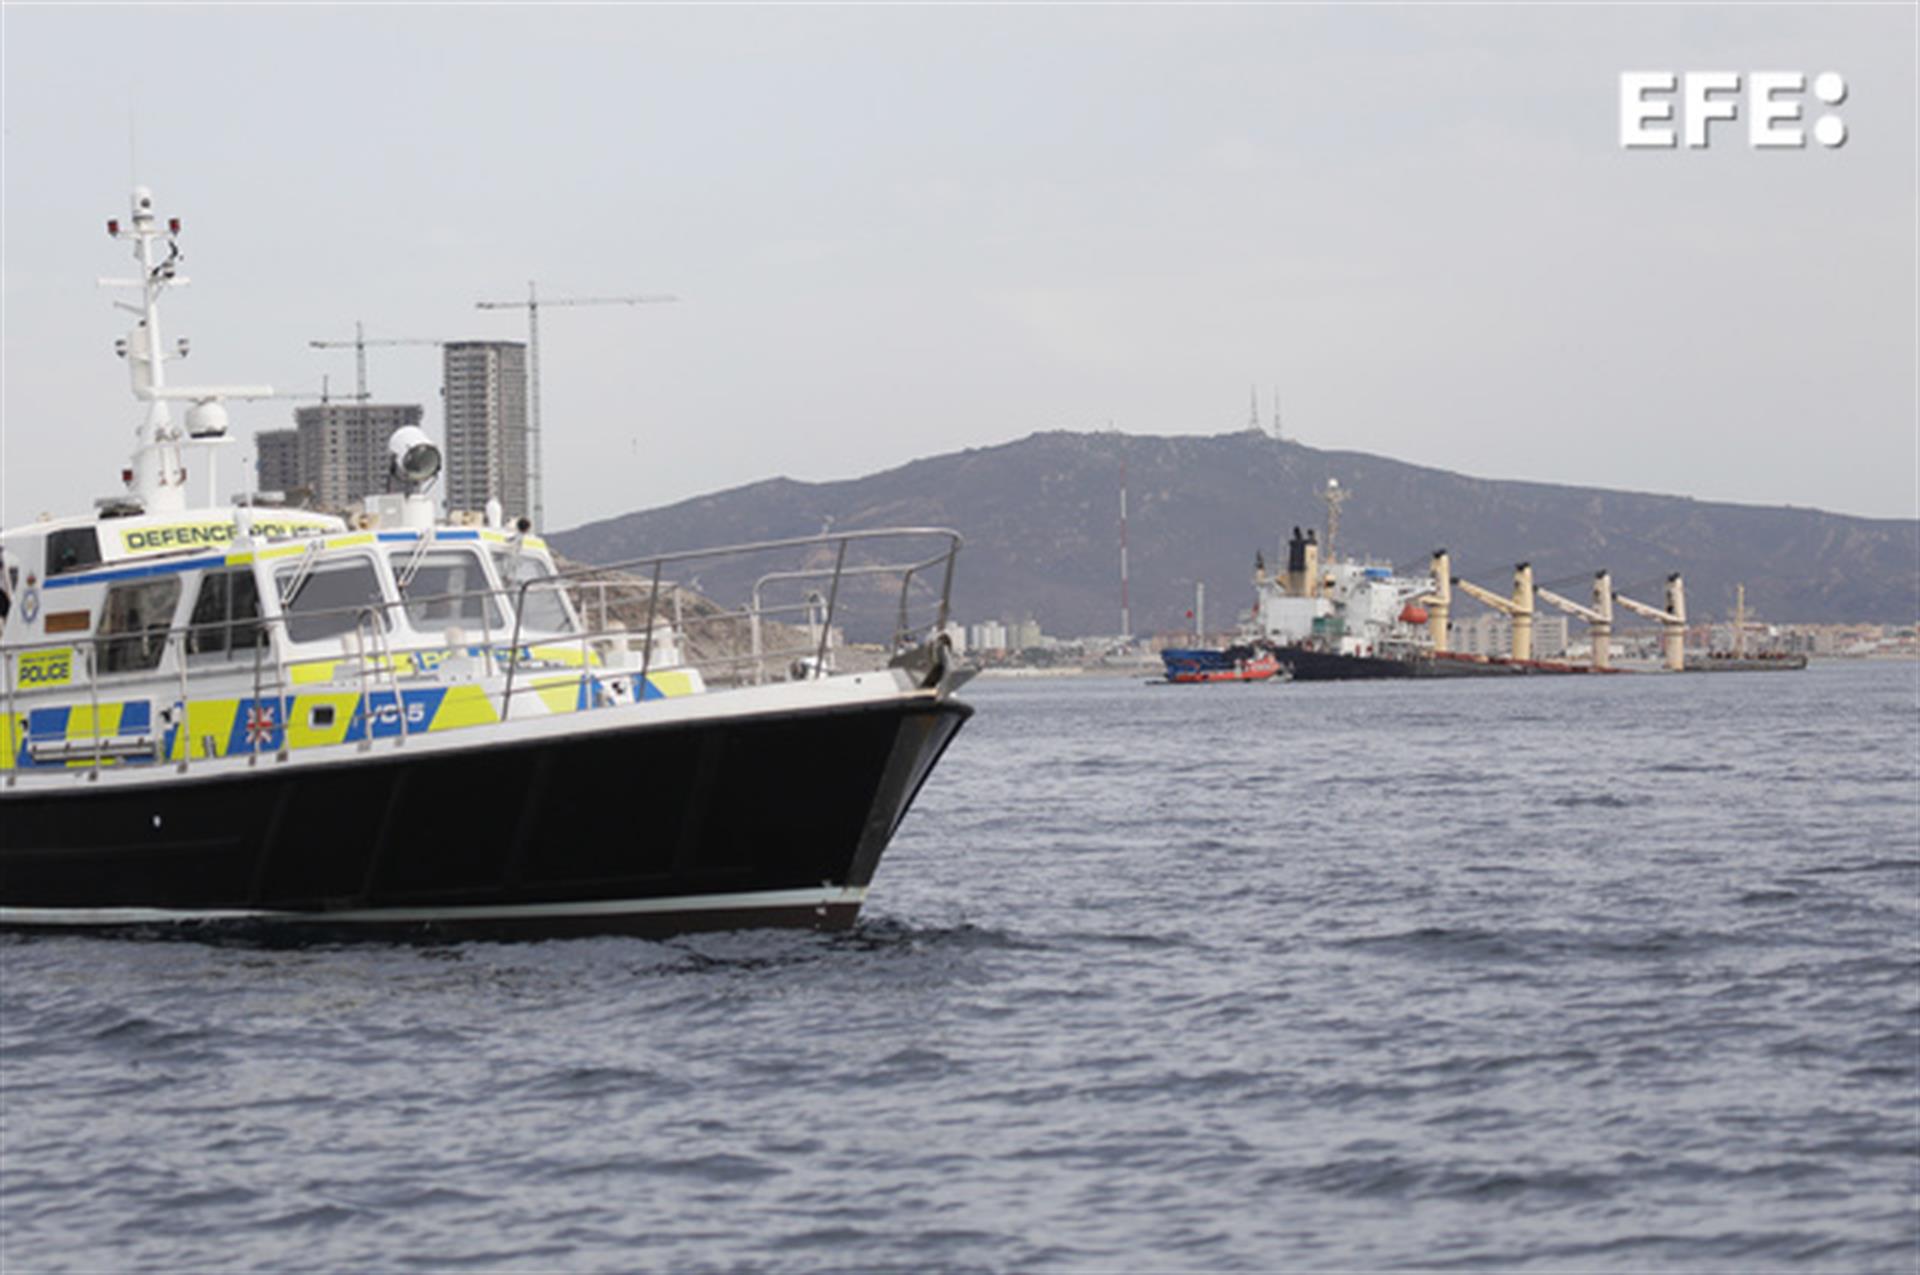 Las tareas de bombeo que comenzaron ayer tarde en el buque "OS 35" (d), el carguero que colisionó el pasado lunes en la Bahía de Algeciras y que permanece varado frente a la cara este de Gibraltar, se han mantenido de forma contínua durante la noche con lo que han logrado extraer hasta las 7:00 horas de hoy 197 metros cúbicos de combustible del barco, el 80 por ciento de la carga del diesel que porta, según ha informado el gobierno de Gibraltar. EFE/A. Carrasco Ragel